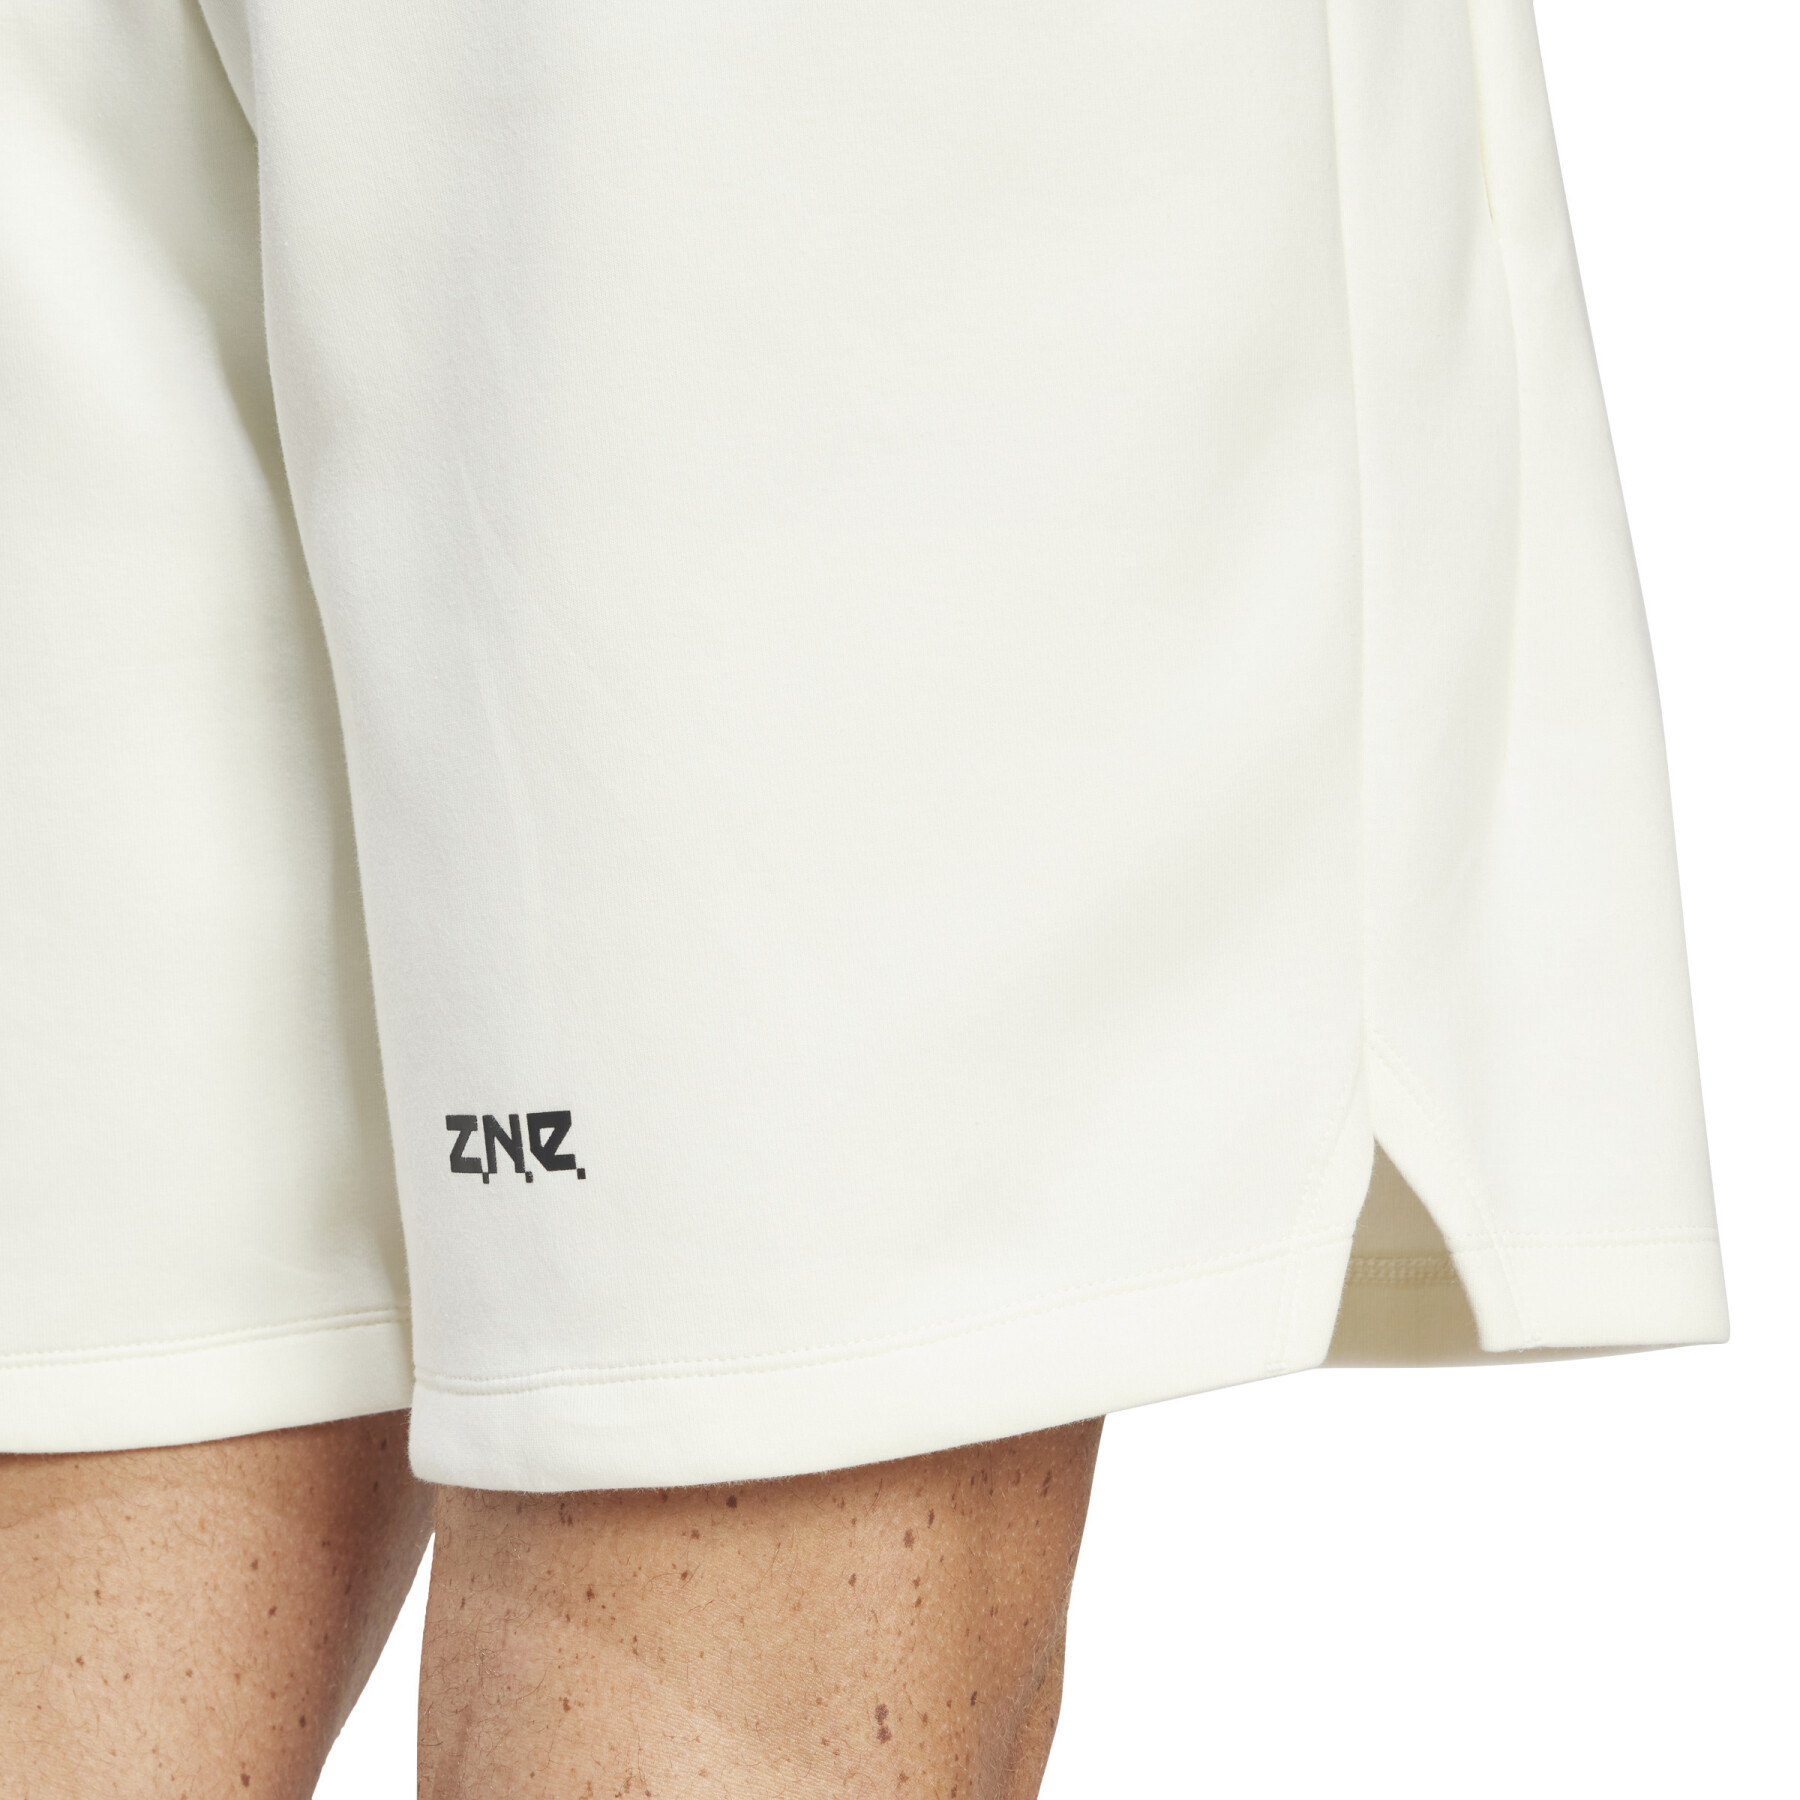 Shorts adidas Z.N.E. Premium